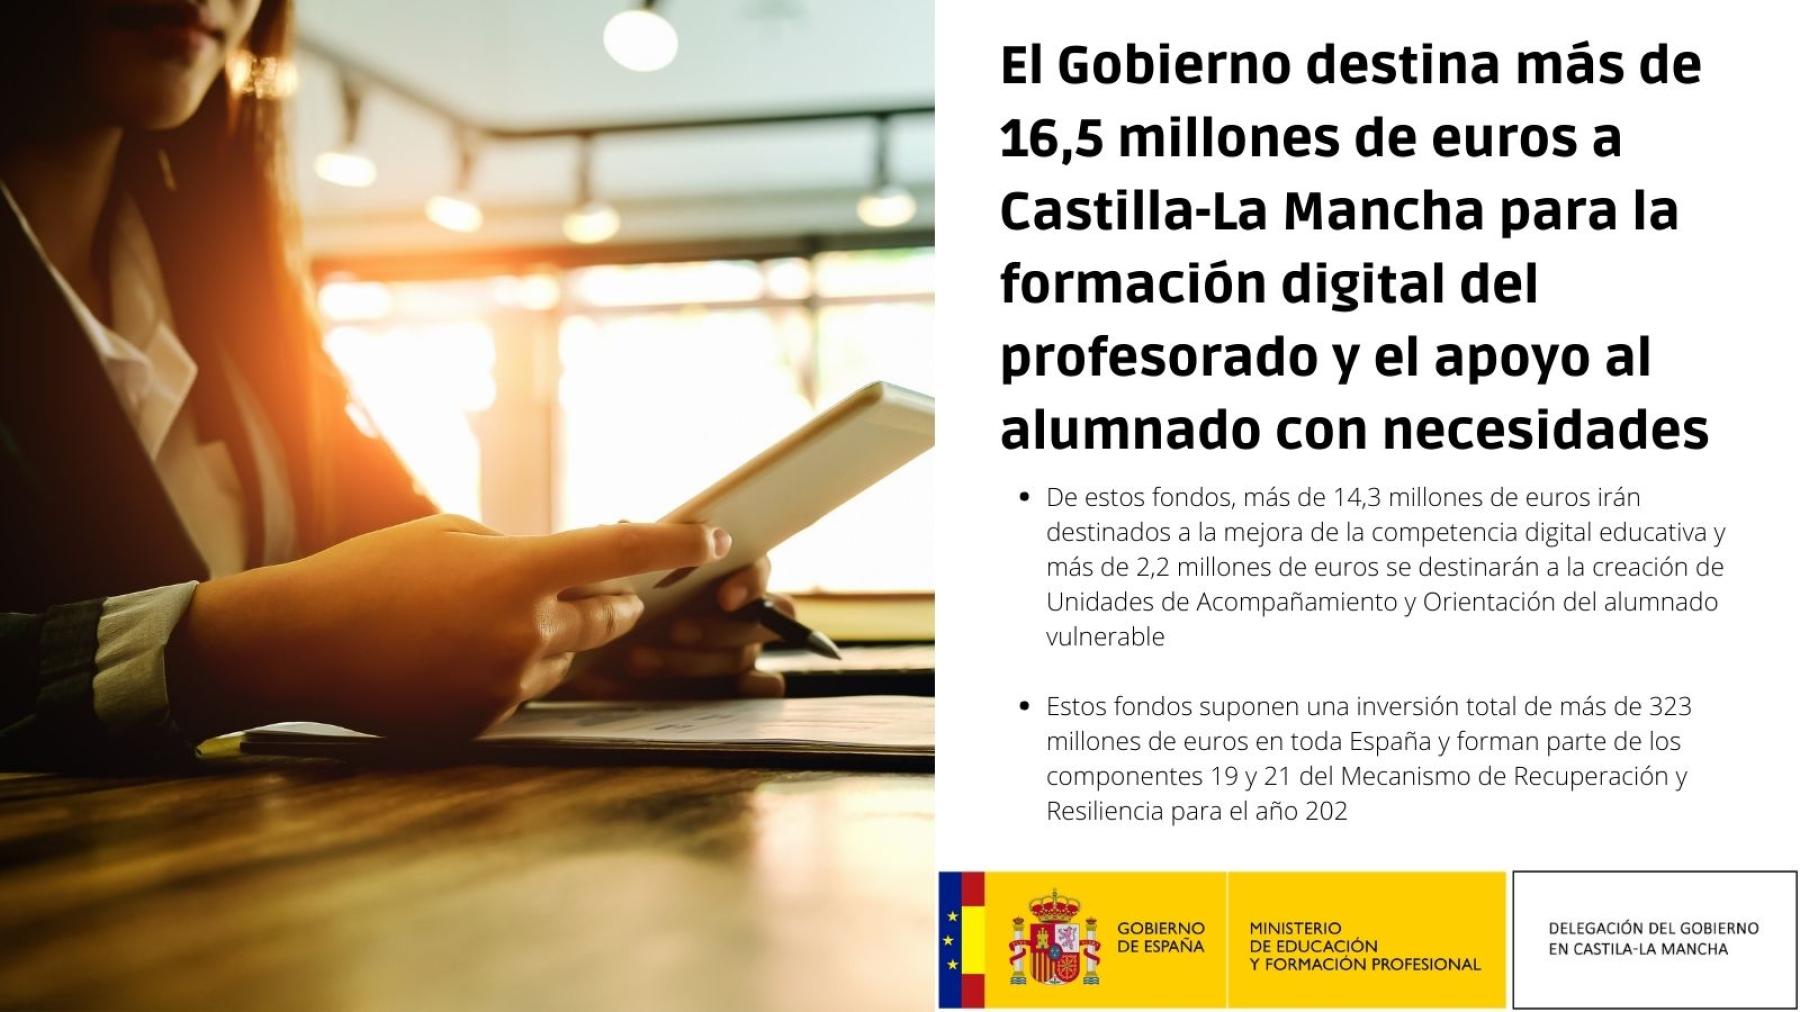 El Gobierno destina más de 16,5 millones de euros a Castilla-La Mancha para la formación digital del profesorado y el apoyo al alumnado con necesidades